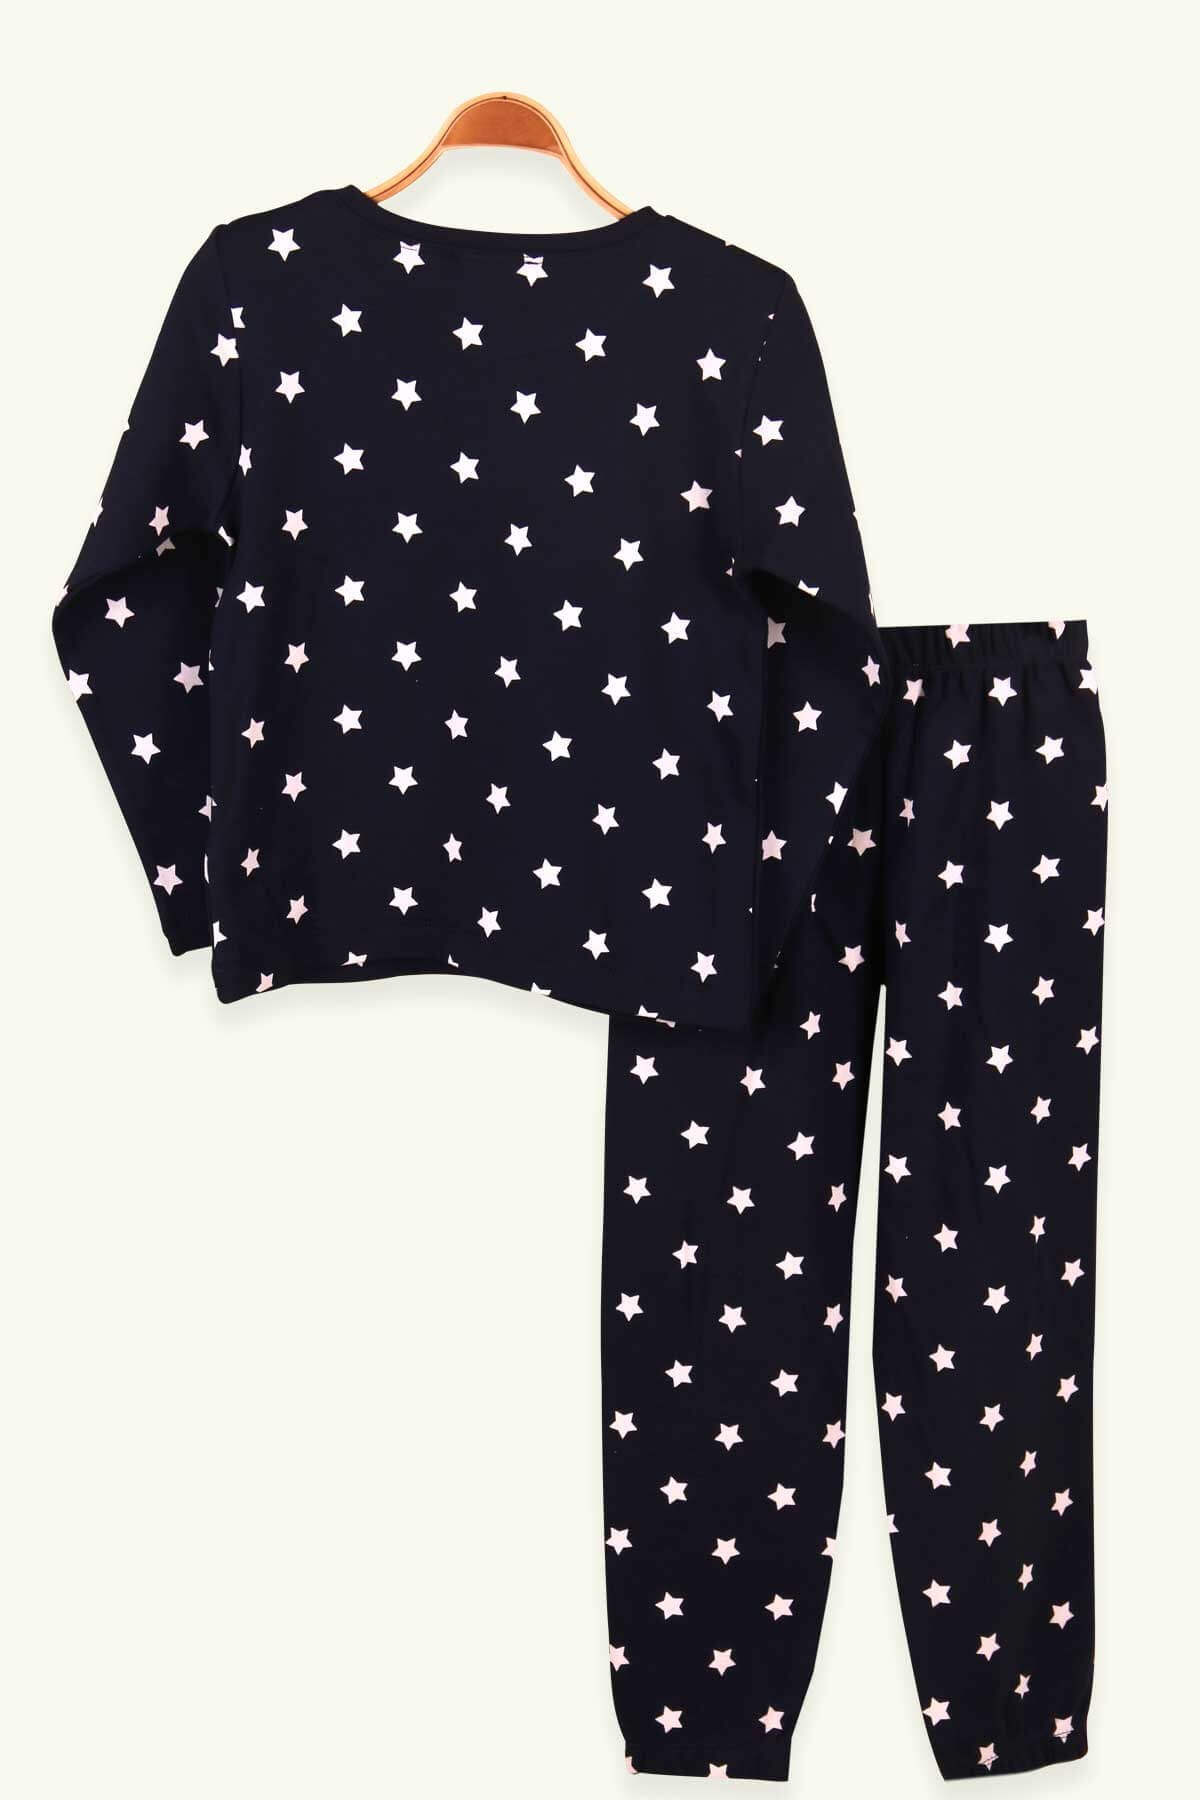 Kız Çocuk Pijama Takımı Yıldız Desenli Lacivert (8 Yaş)